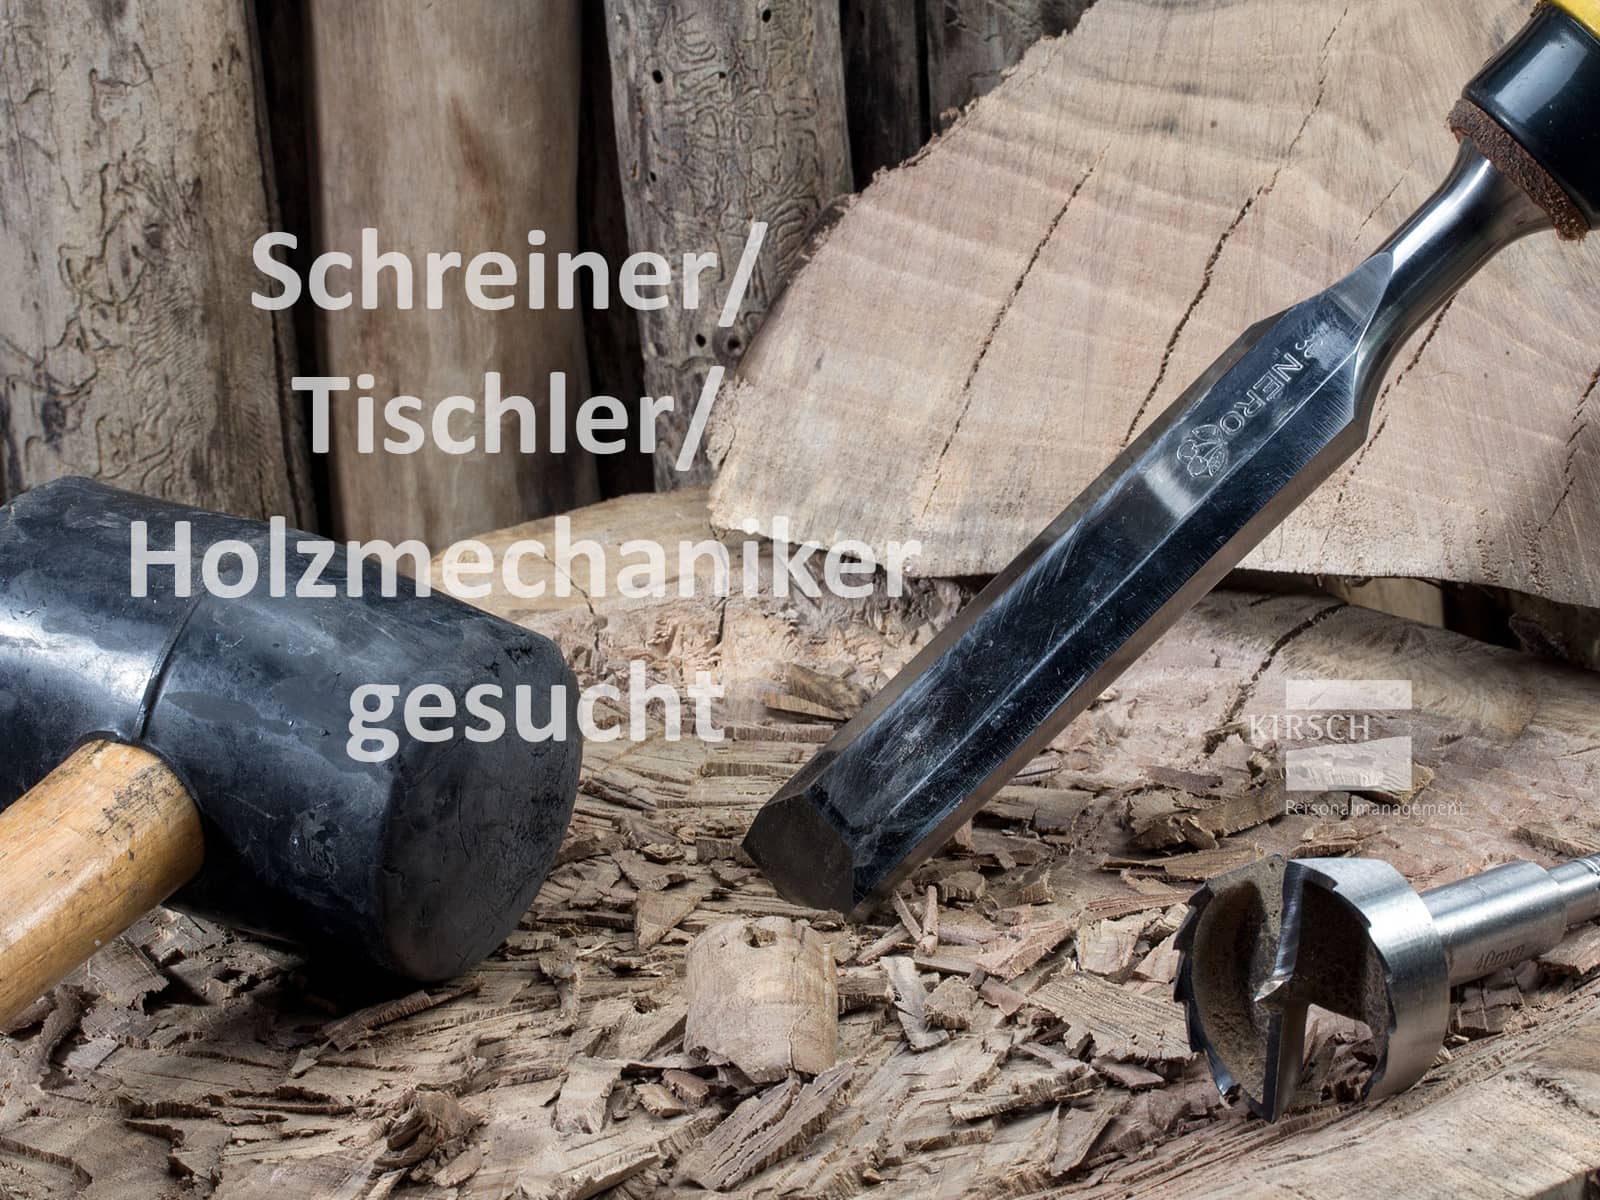 Schreiner / Tischler / Holzmechaniker gesucht - Kirsch GmbH Personalmanagement